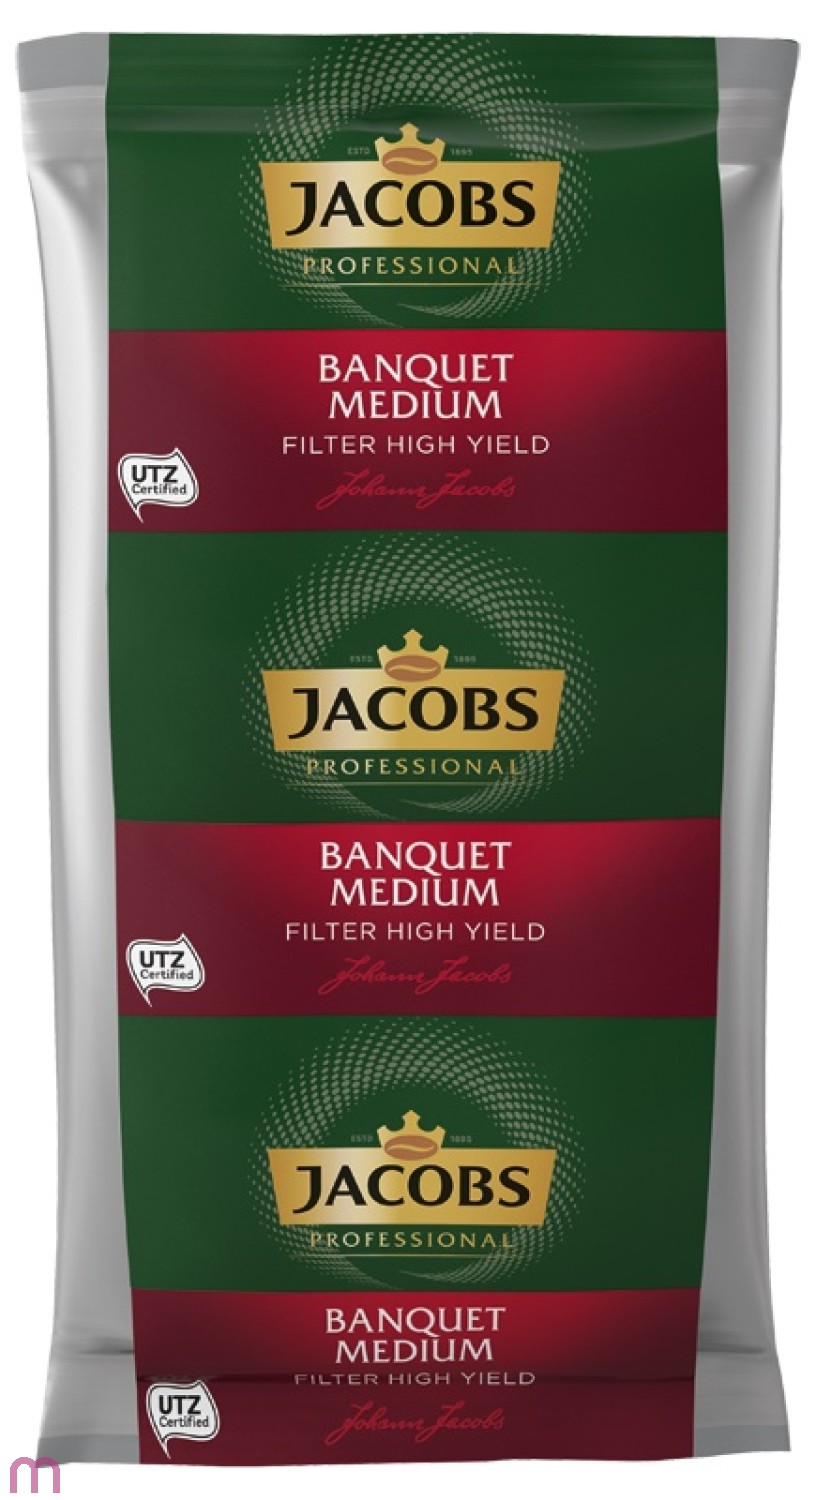 Jacobs Banquet Medium Filter High Yield 30 x 160g, gemahlen, UTZ zertifiziert